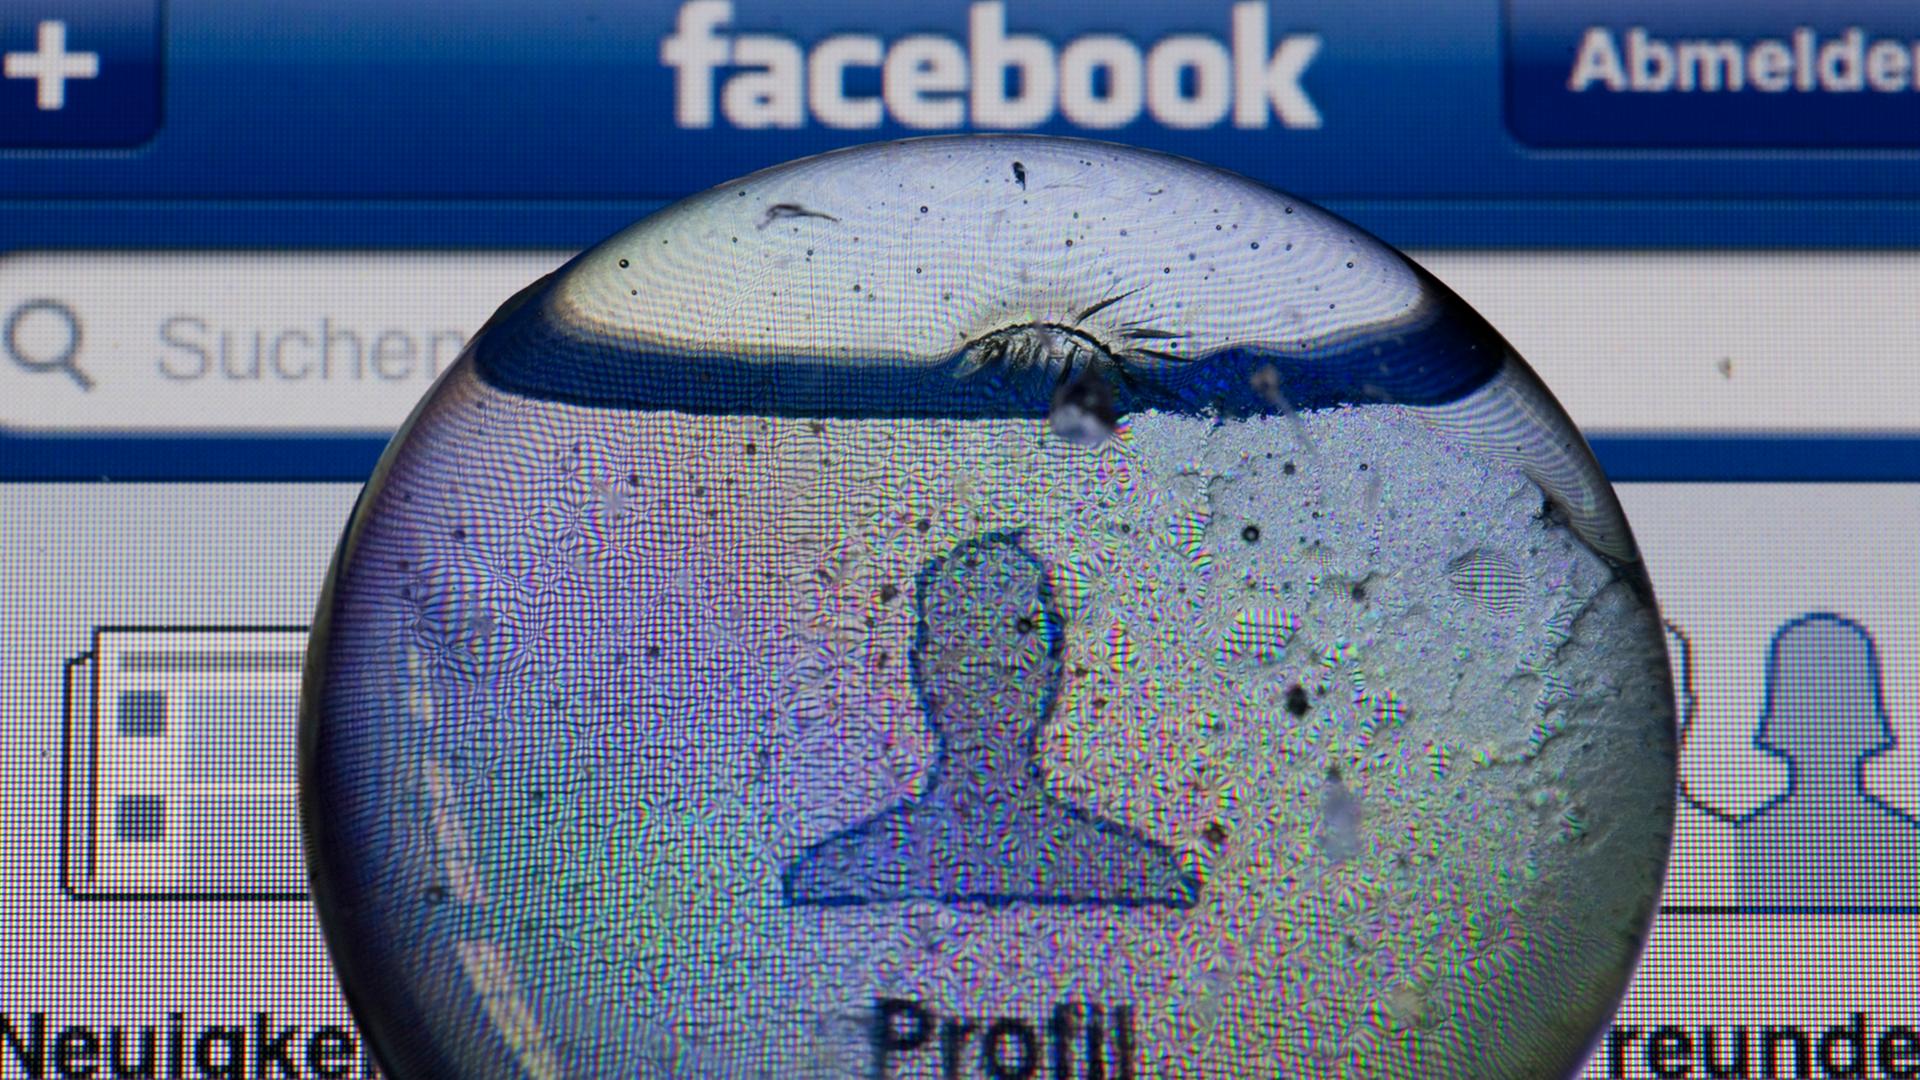 Ein Glasstein liegt auf dem Bildschirm eines iPhones und vergrößert das Profil-Icon einer Facebook-Anwendung.